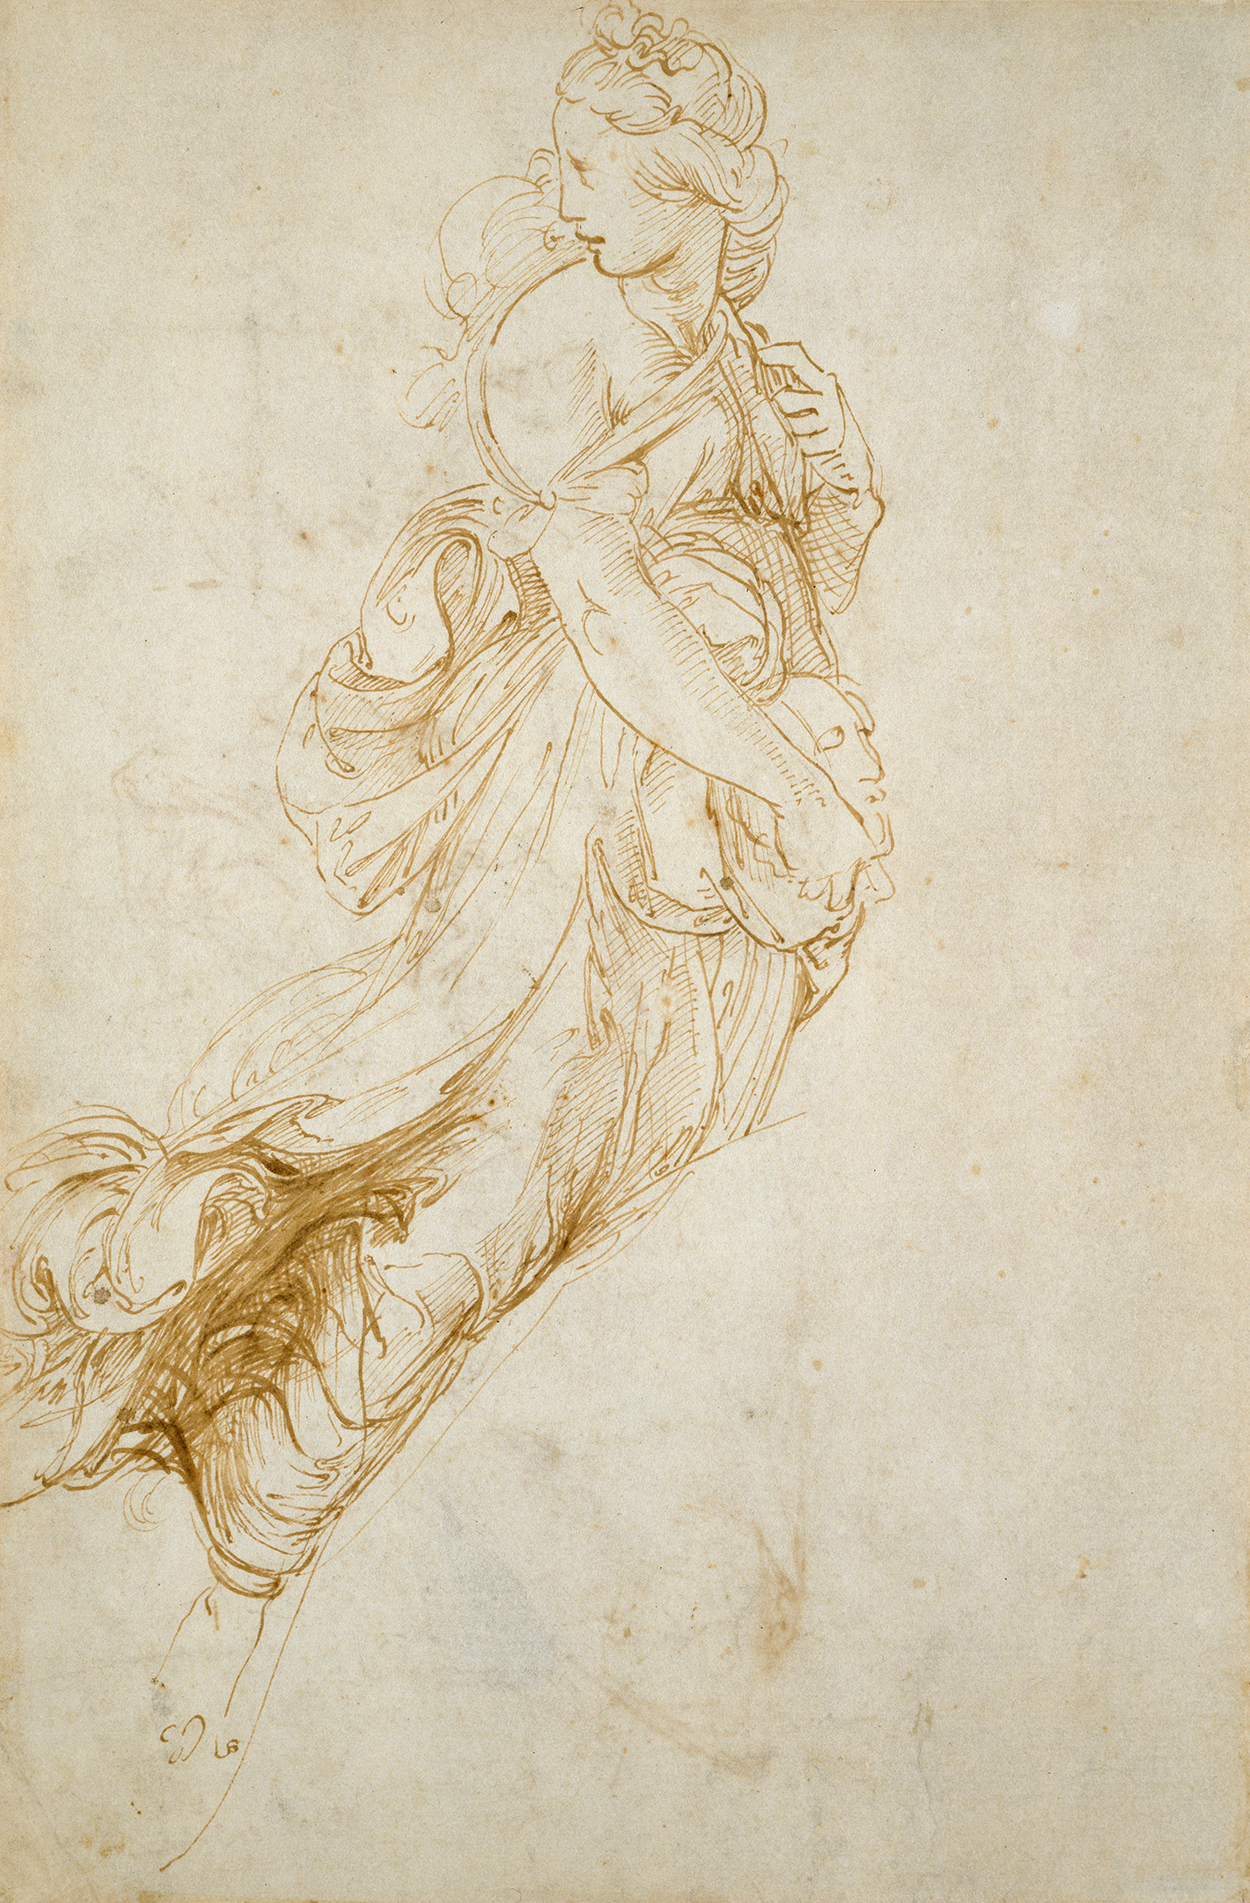 缪斯墨尔波墨涅手稿 by 拉斐尔 桑蒂 - c.1510-11 阿什莫林博物馆